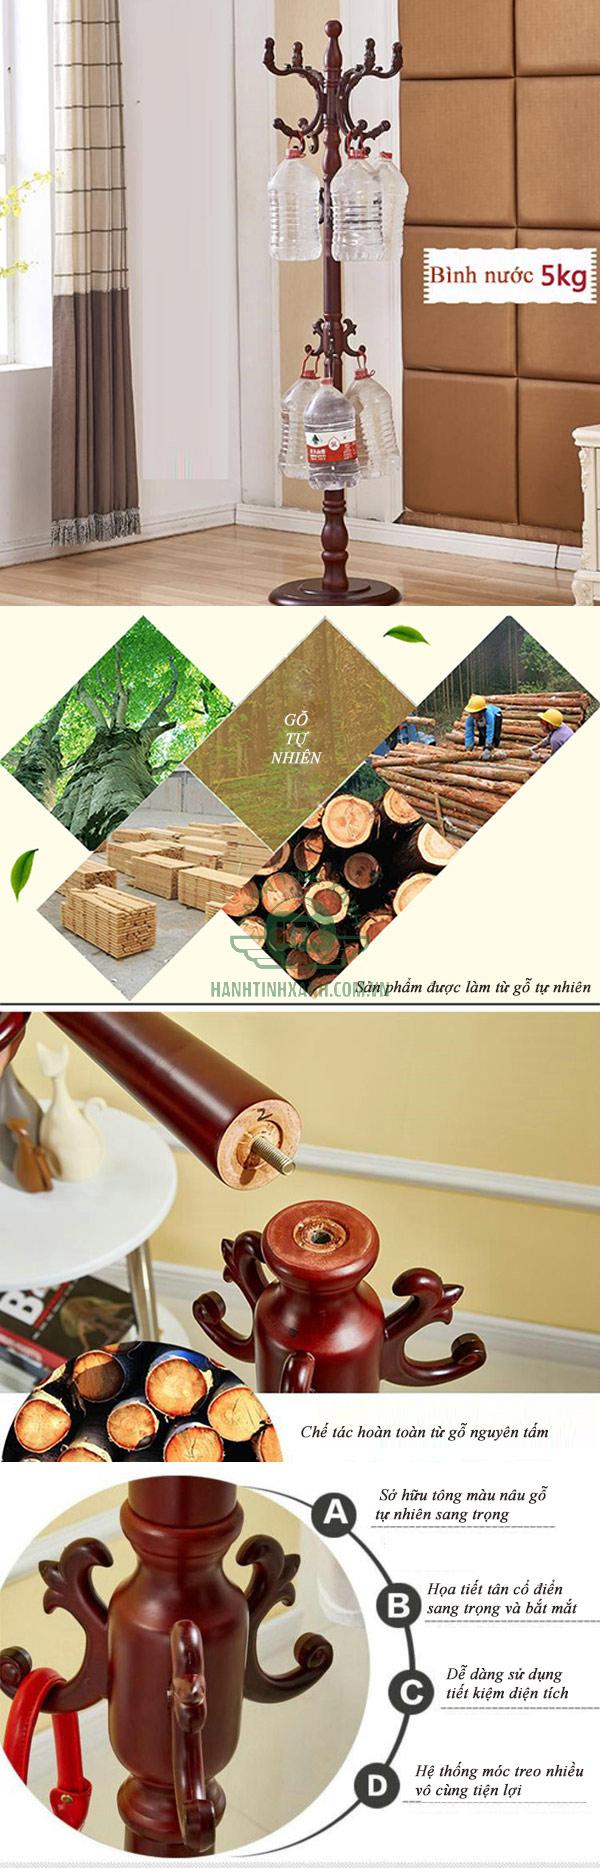 Đặc điểm mẫu cây treo chất liệu gỗ